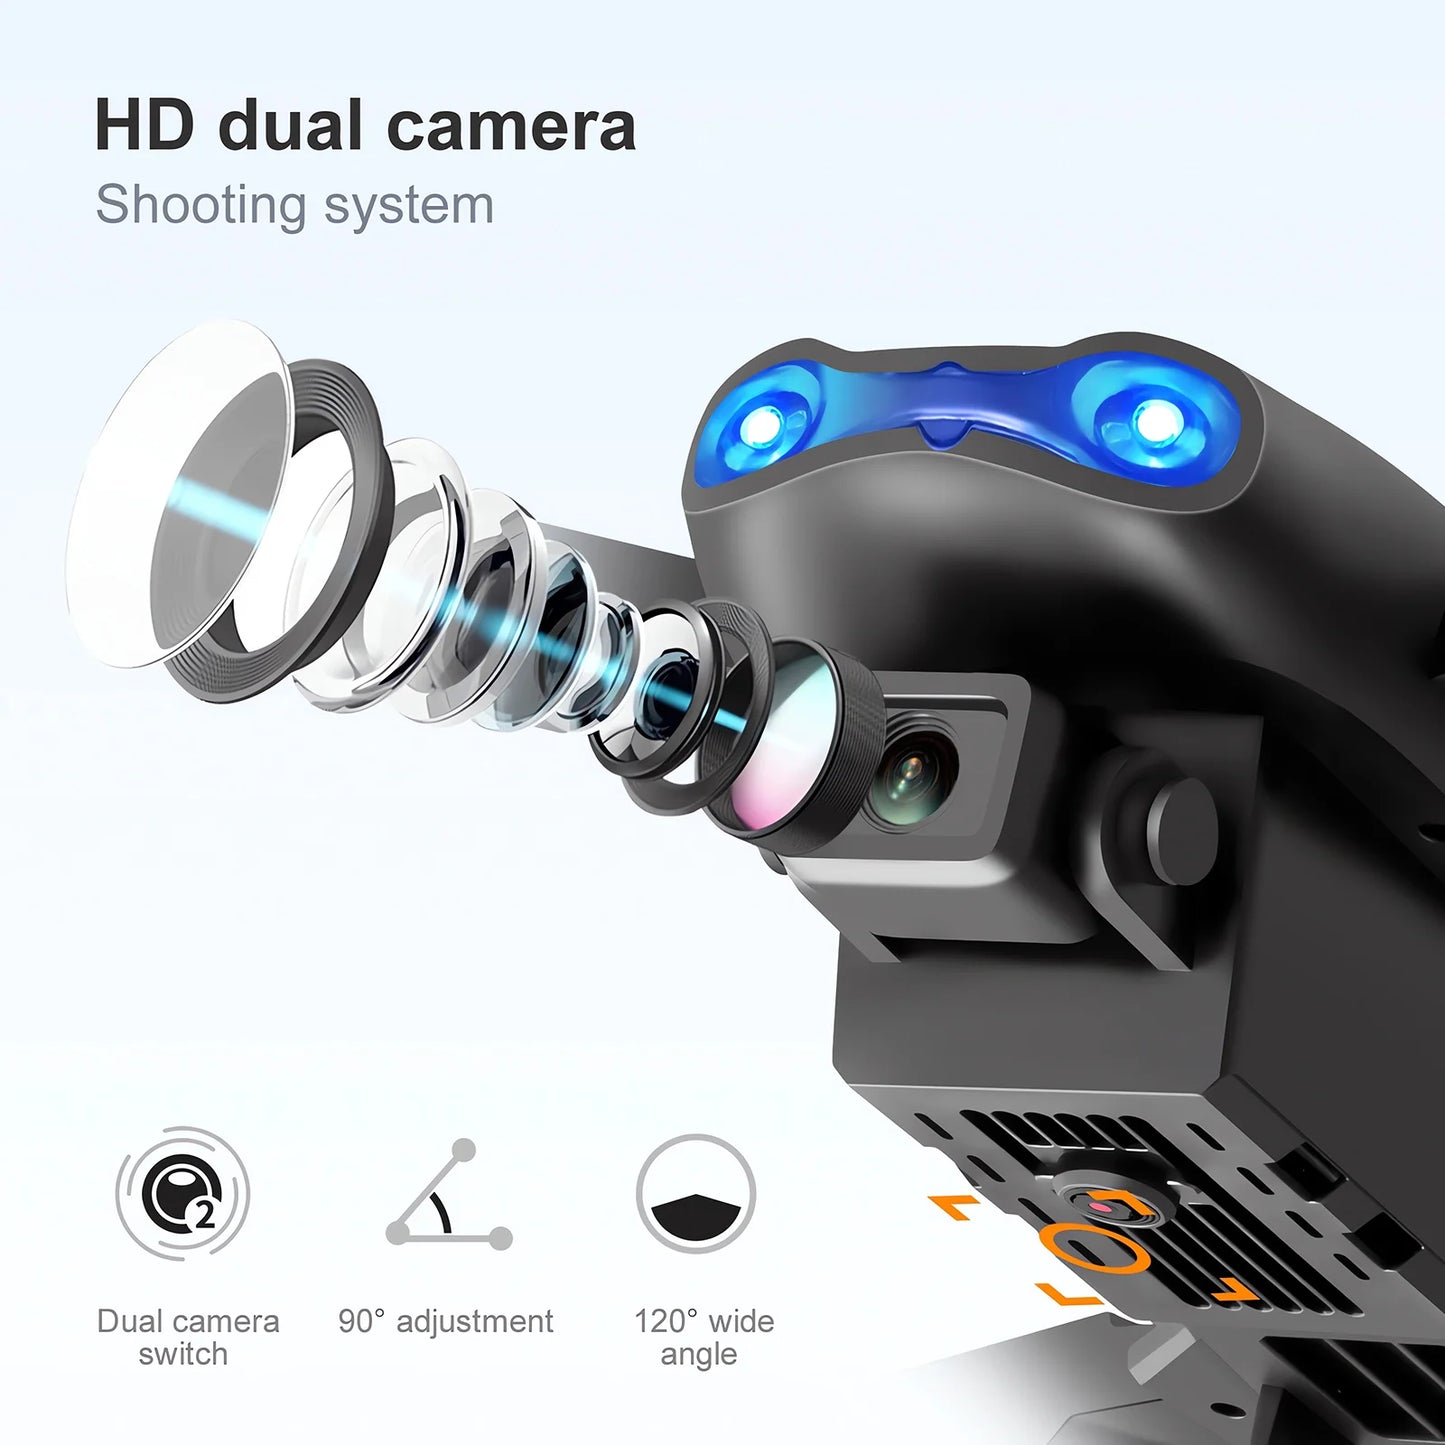 โดรนอาร์ซี E99Pro ใหม่4K professinal มีมุมกว้างกล้อง HD คู่เฮลิคอปเตอร์บังคับวิทยุพับเก็บได้ความสูง5G WiFi FPV